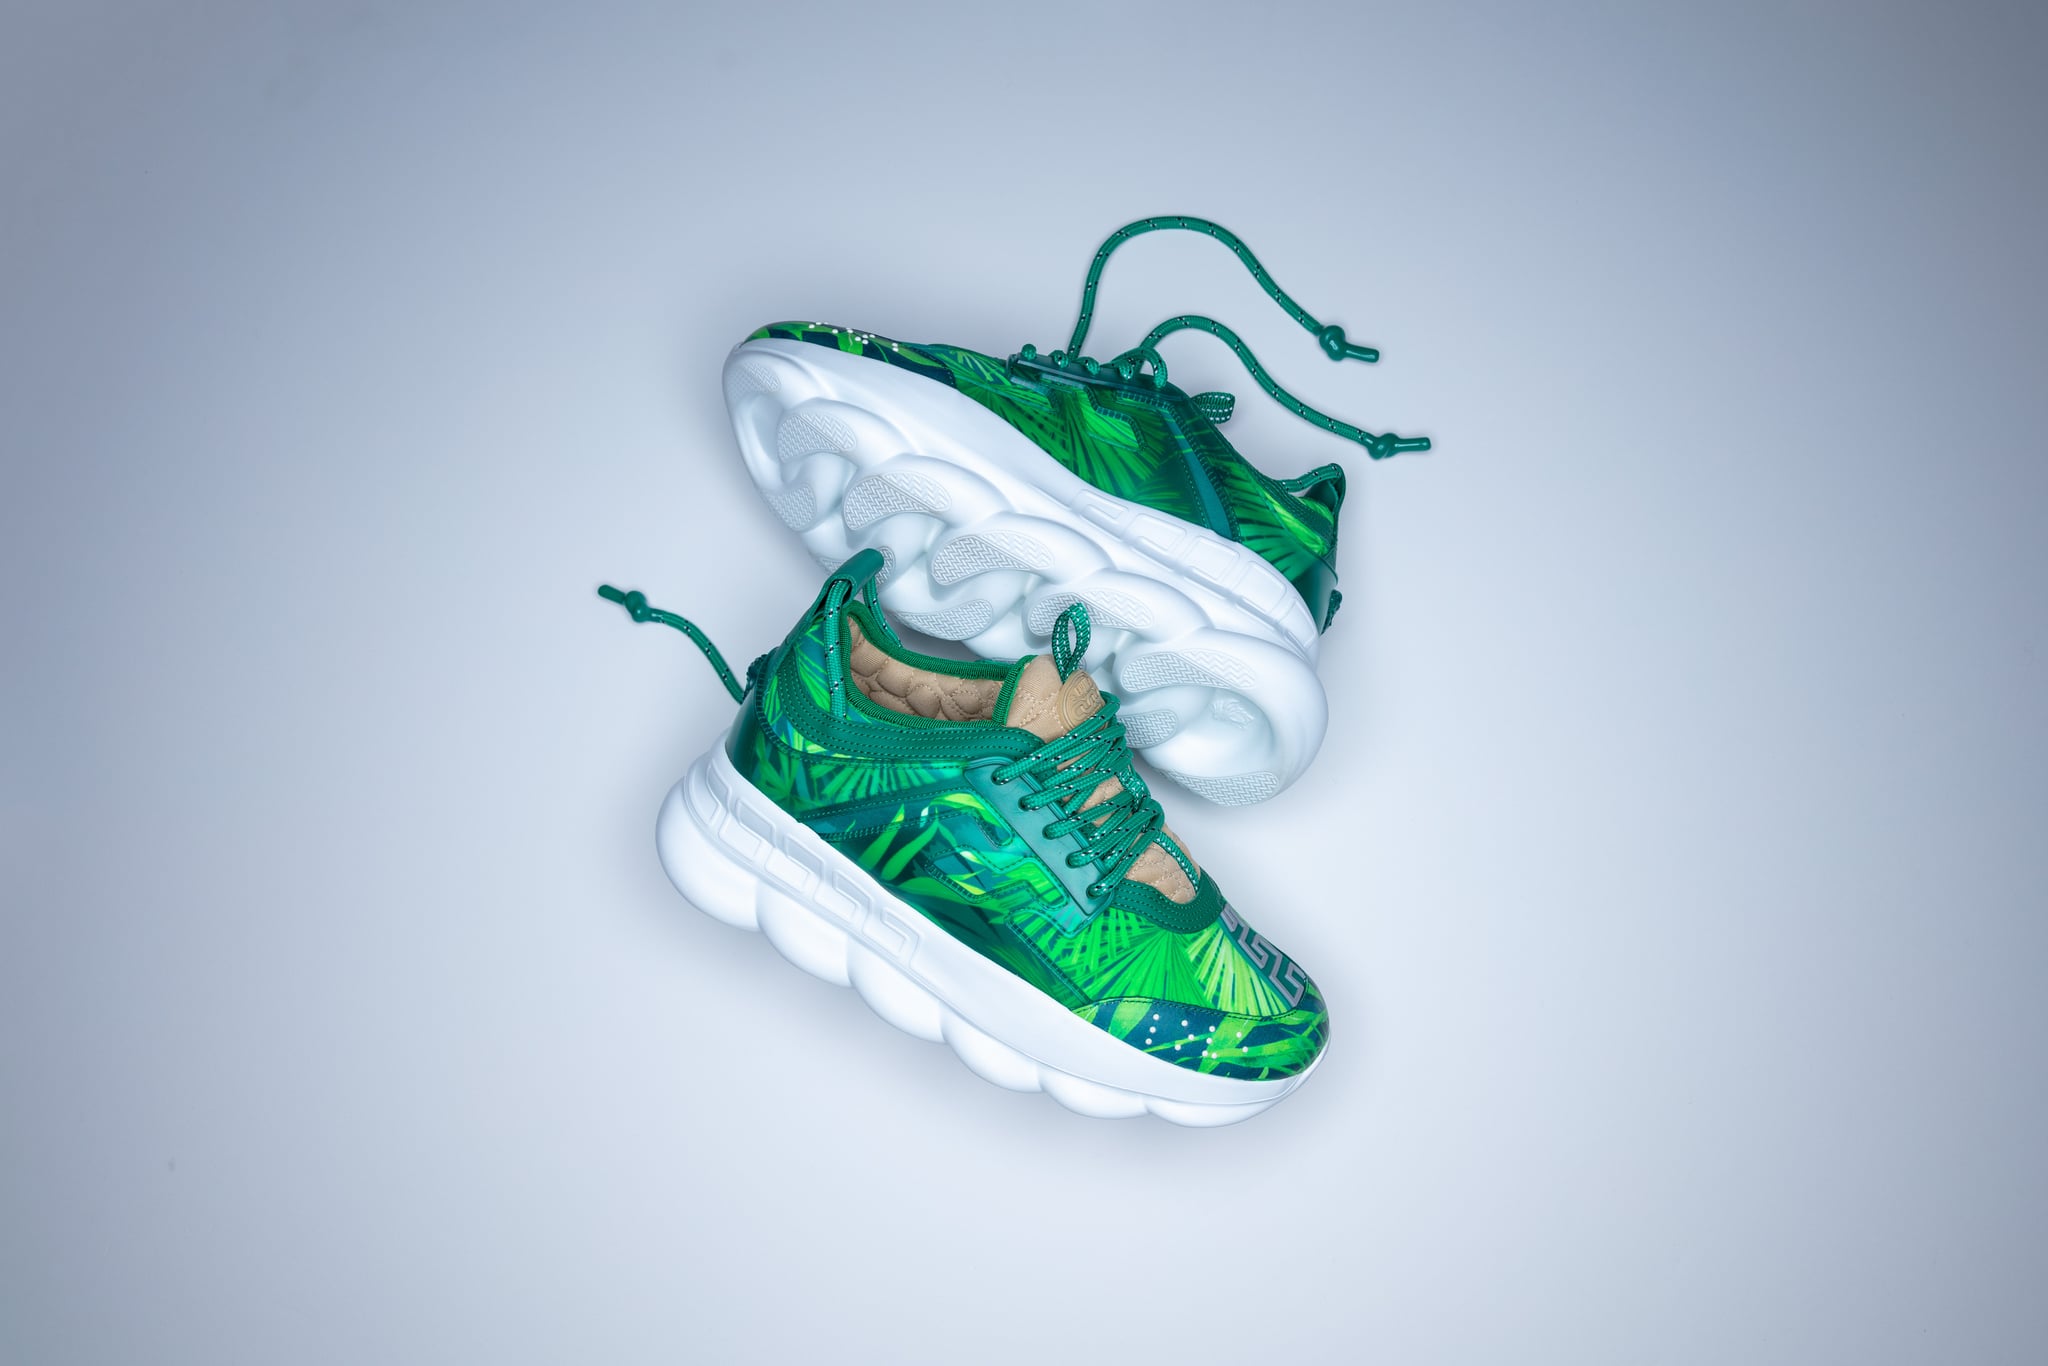 green versace sneakers